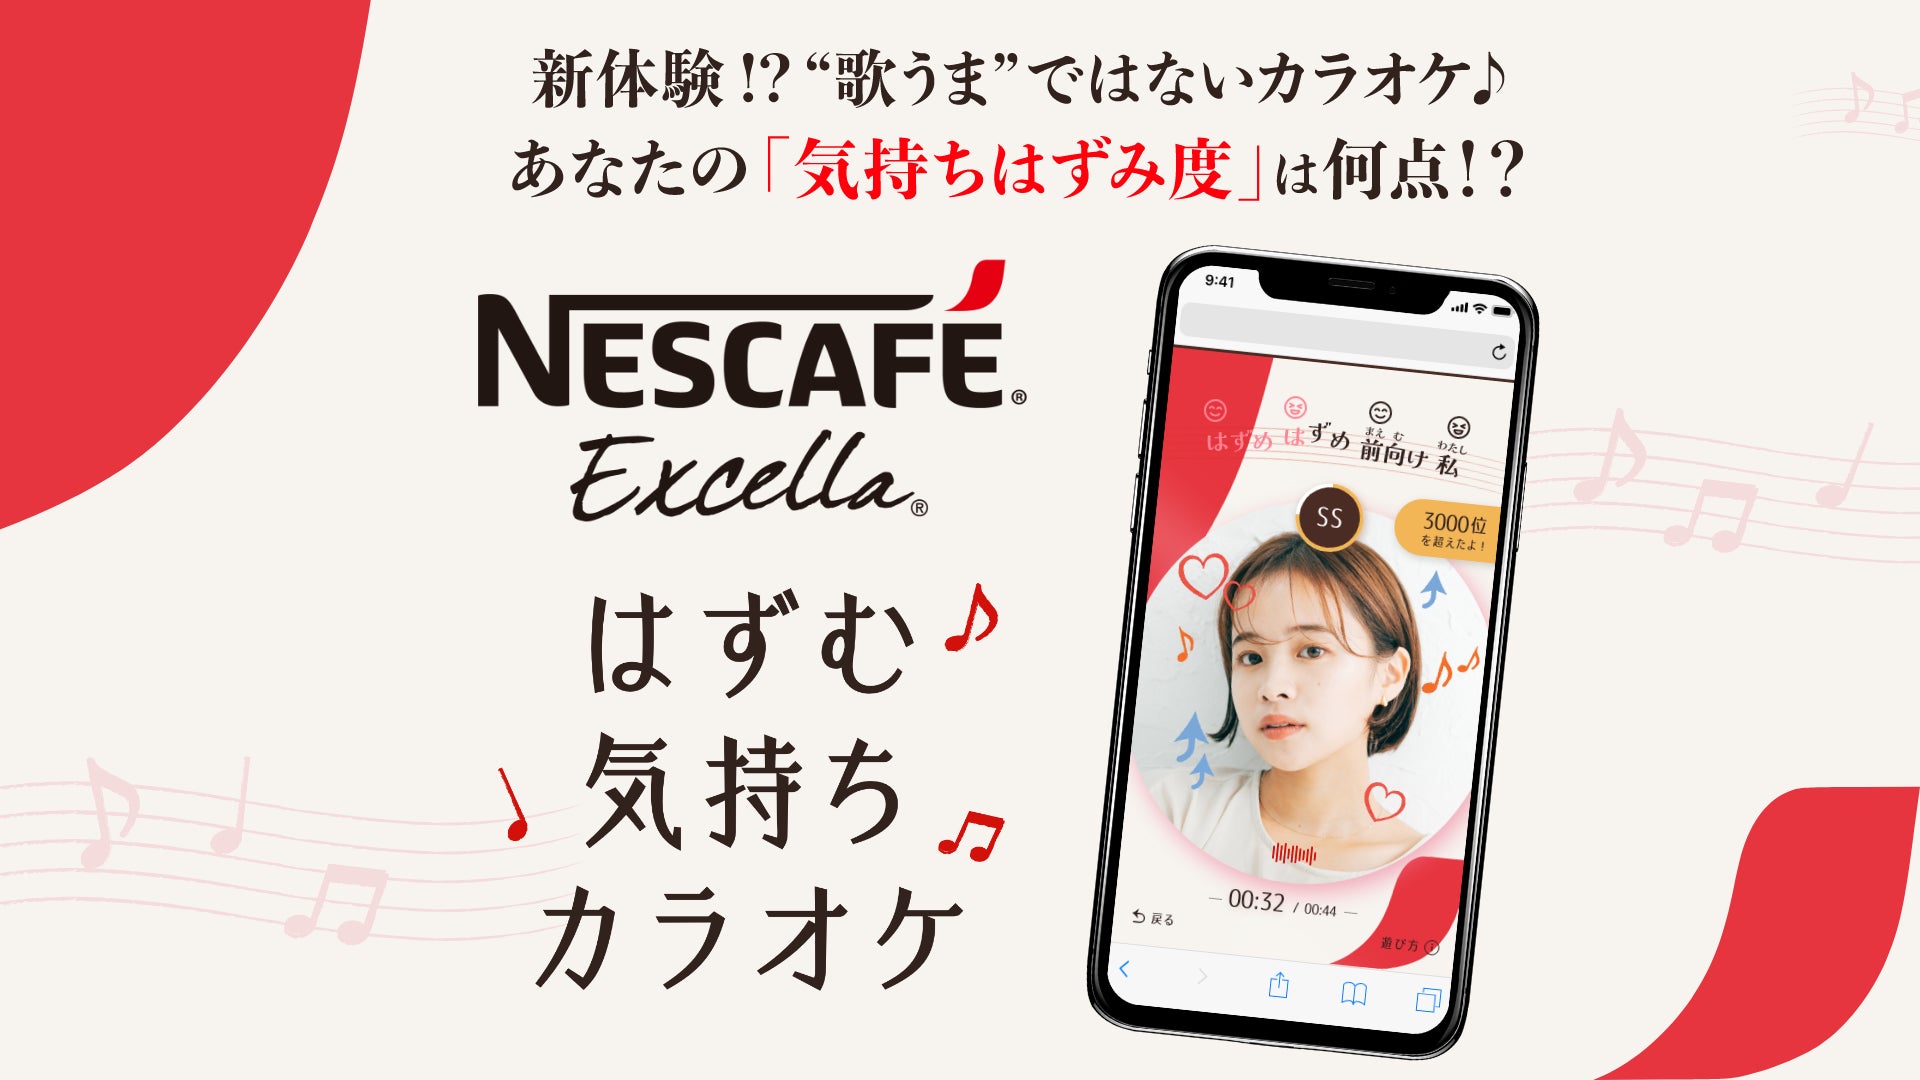 松浦亜弥さんが歌う「ネスカフェ エクセラ」のCMソングを歌って、表情や声色から“気持ちはずみ度”を採点！「ネスカフェ エクセラ はずむ気持ちカラオケ♪」 3月13日（月）より、特設サイト上で公開